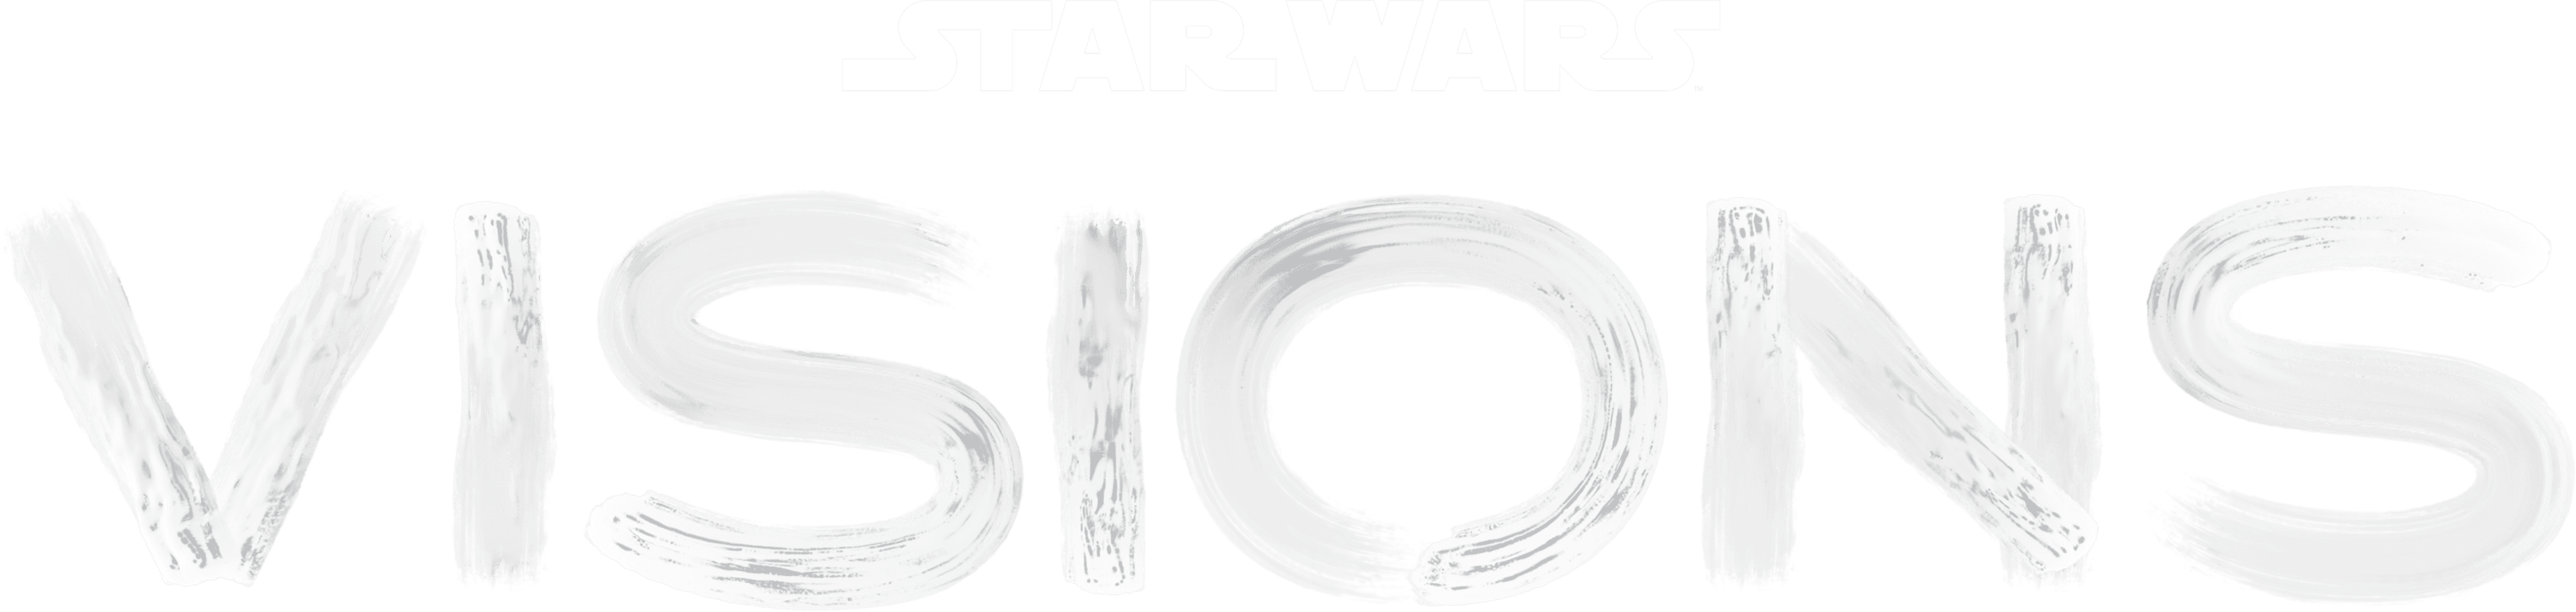 Star Wars: Visions logo